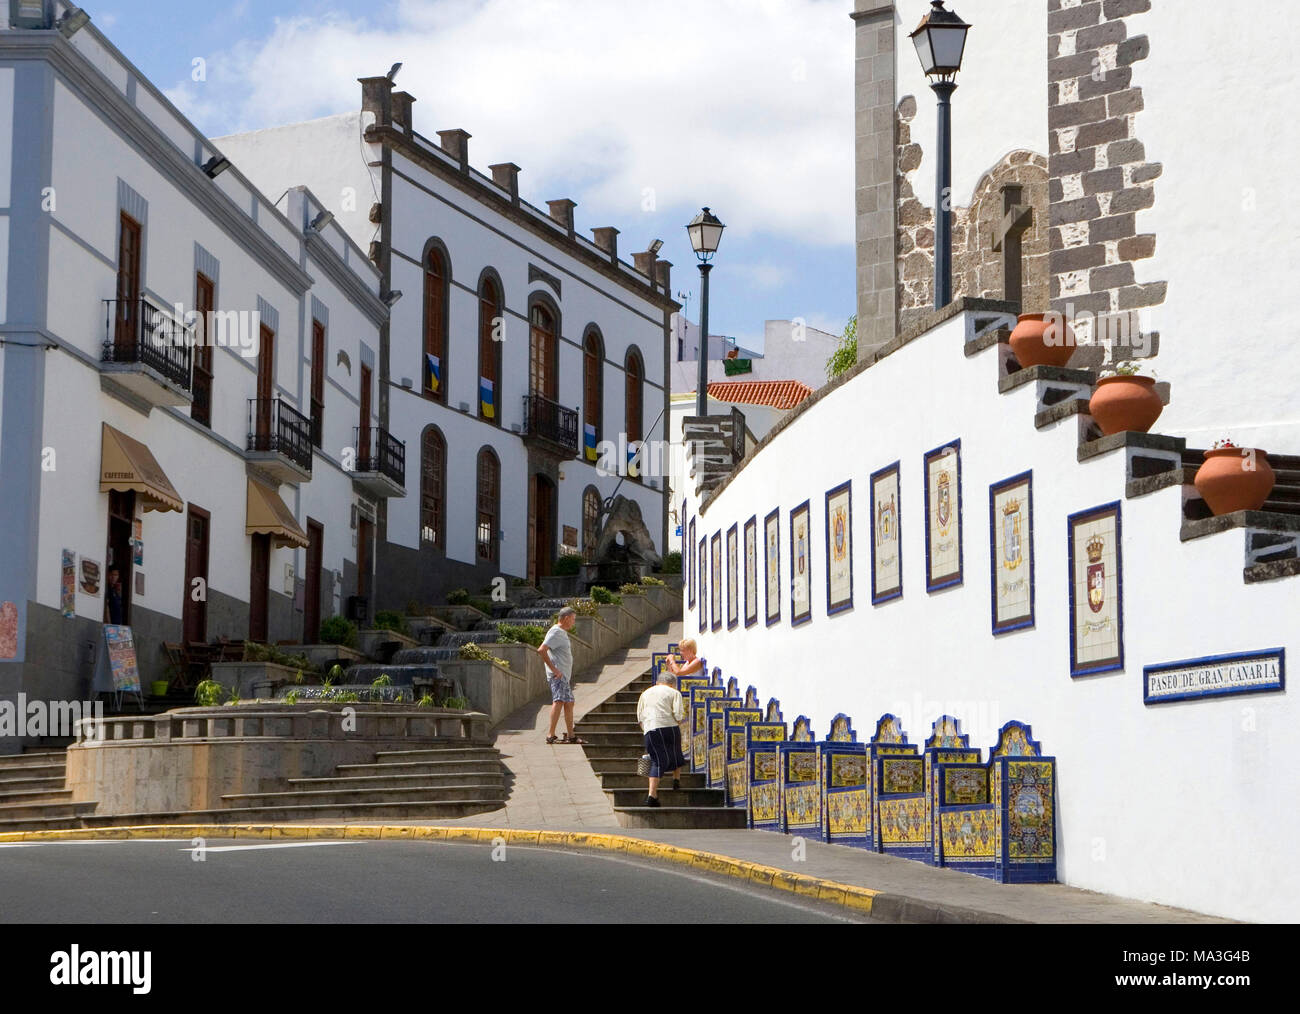 Firgas, Paseo de Gran Canaria, fundada en 1995 por artistas españoles. La parte inferior muestra los bancos con elaborados mosaicos que representan 21 parroquias de la isla. La parte superior representa las siete Islas Canarias. Foto de stock